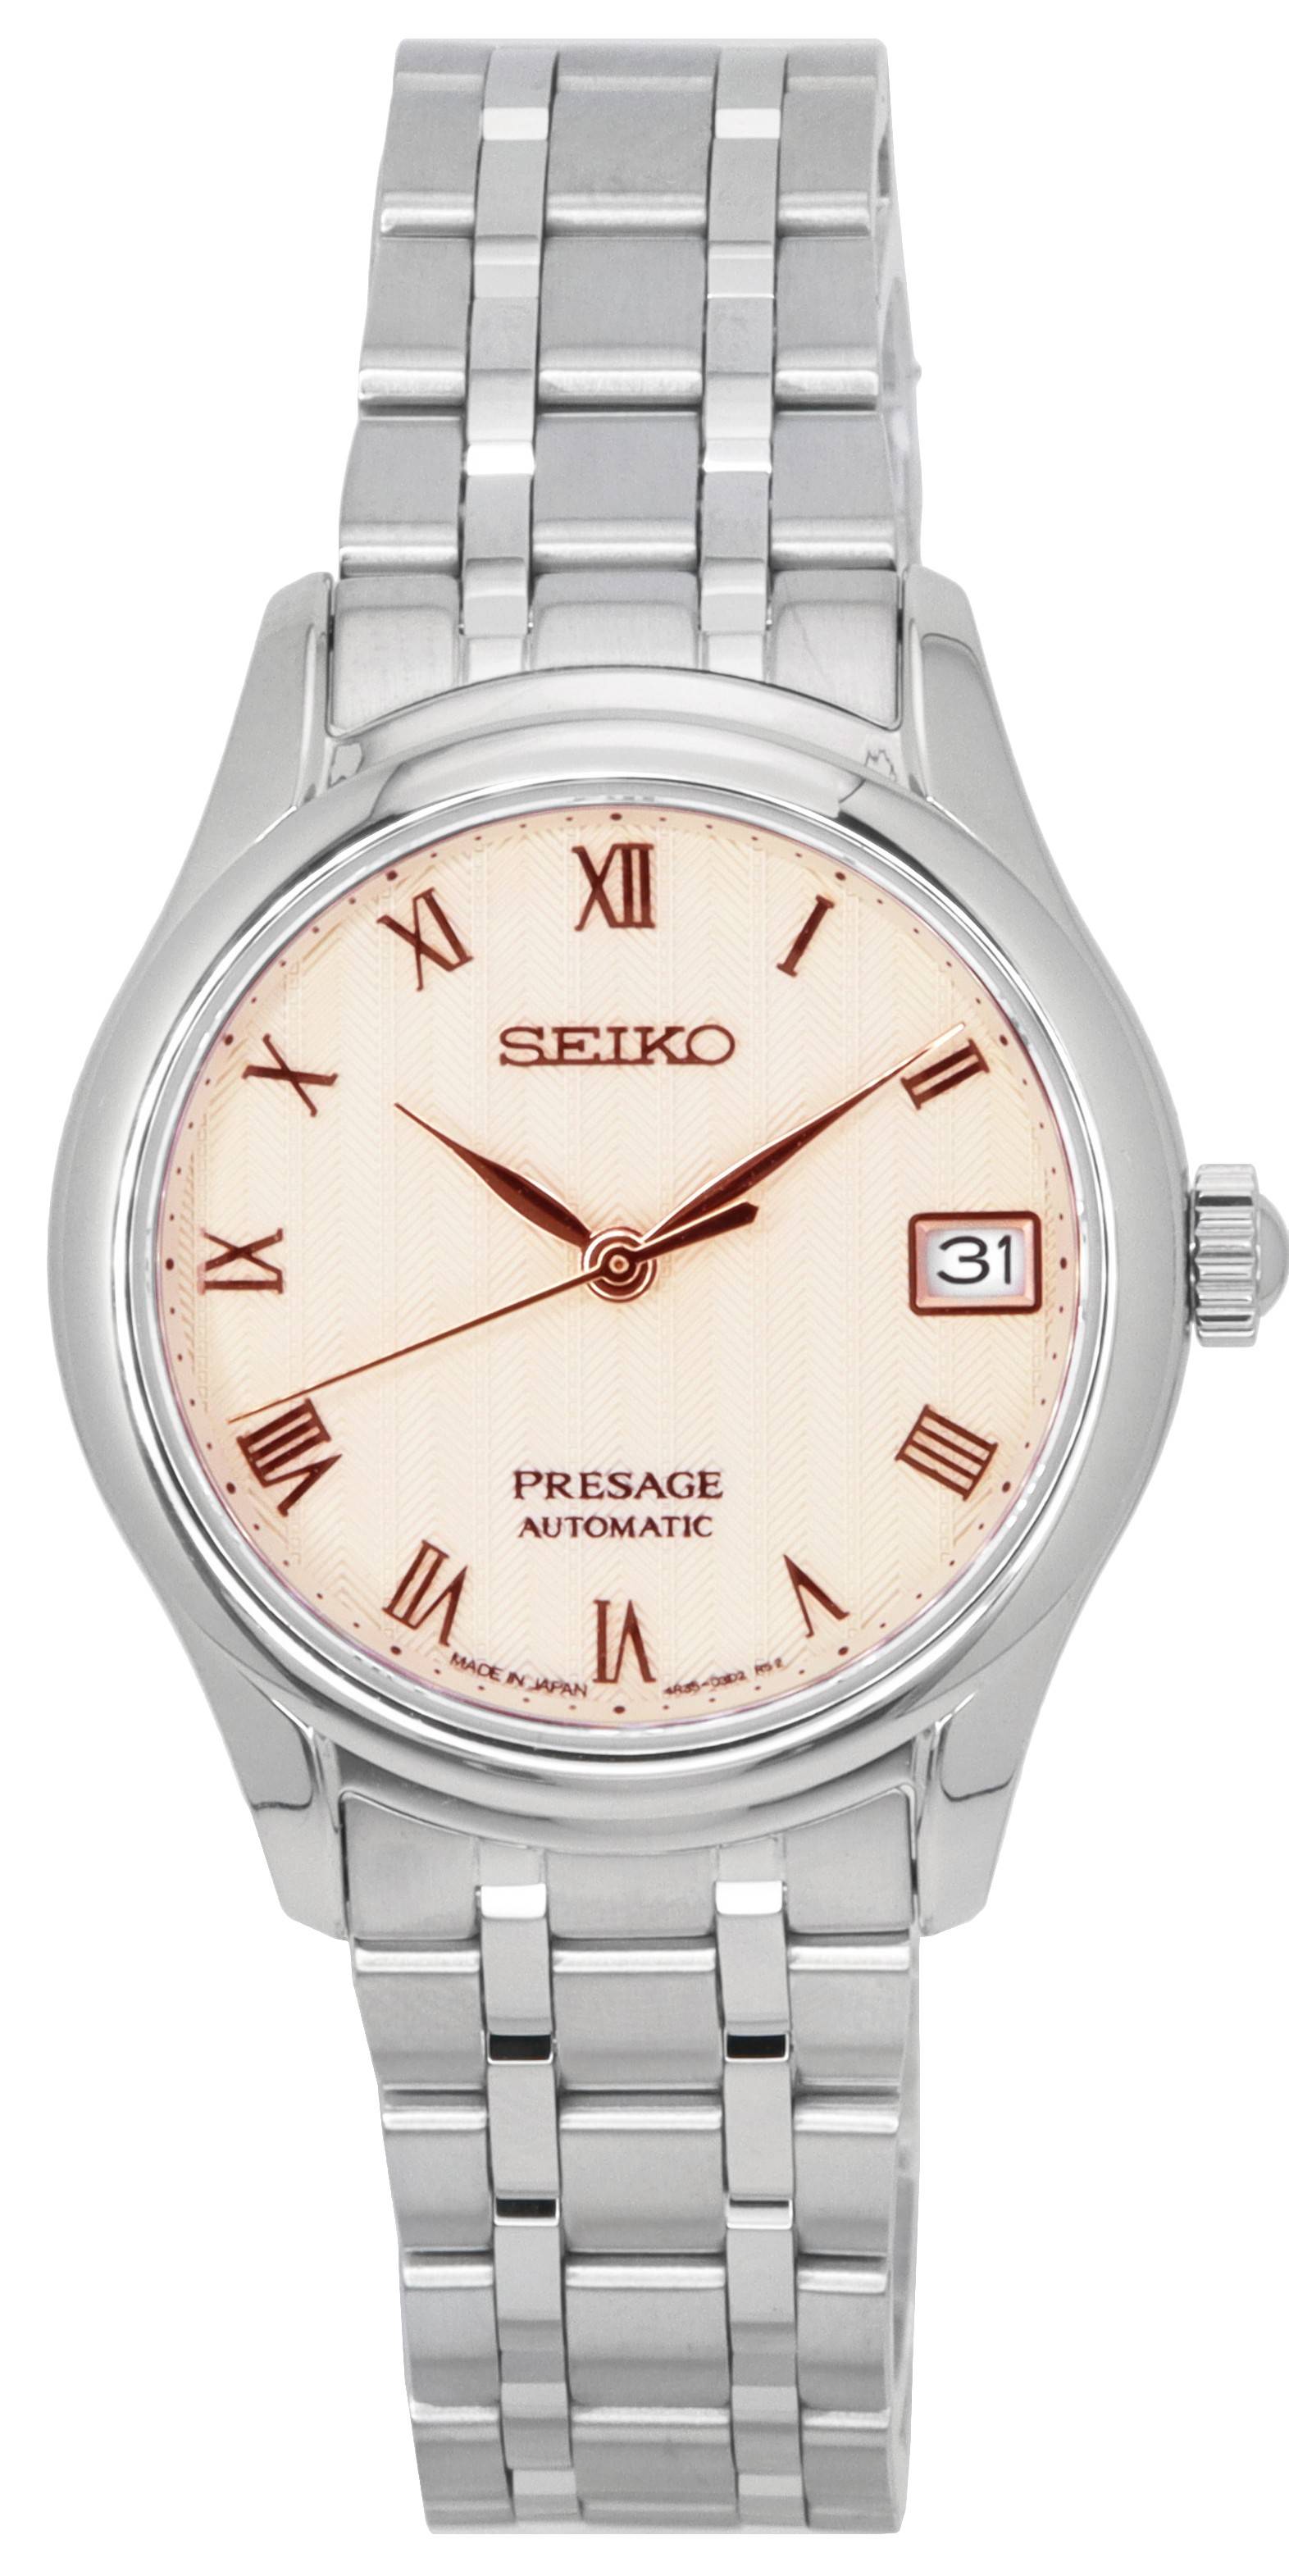 Đồng hồ Seiko Presage đang giảm giá | Miễn phí vận chuyển toàn cầu